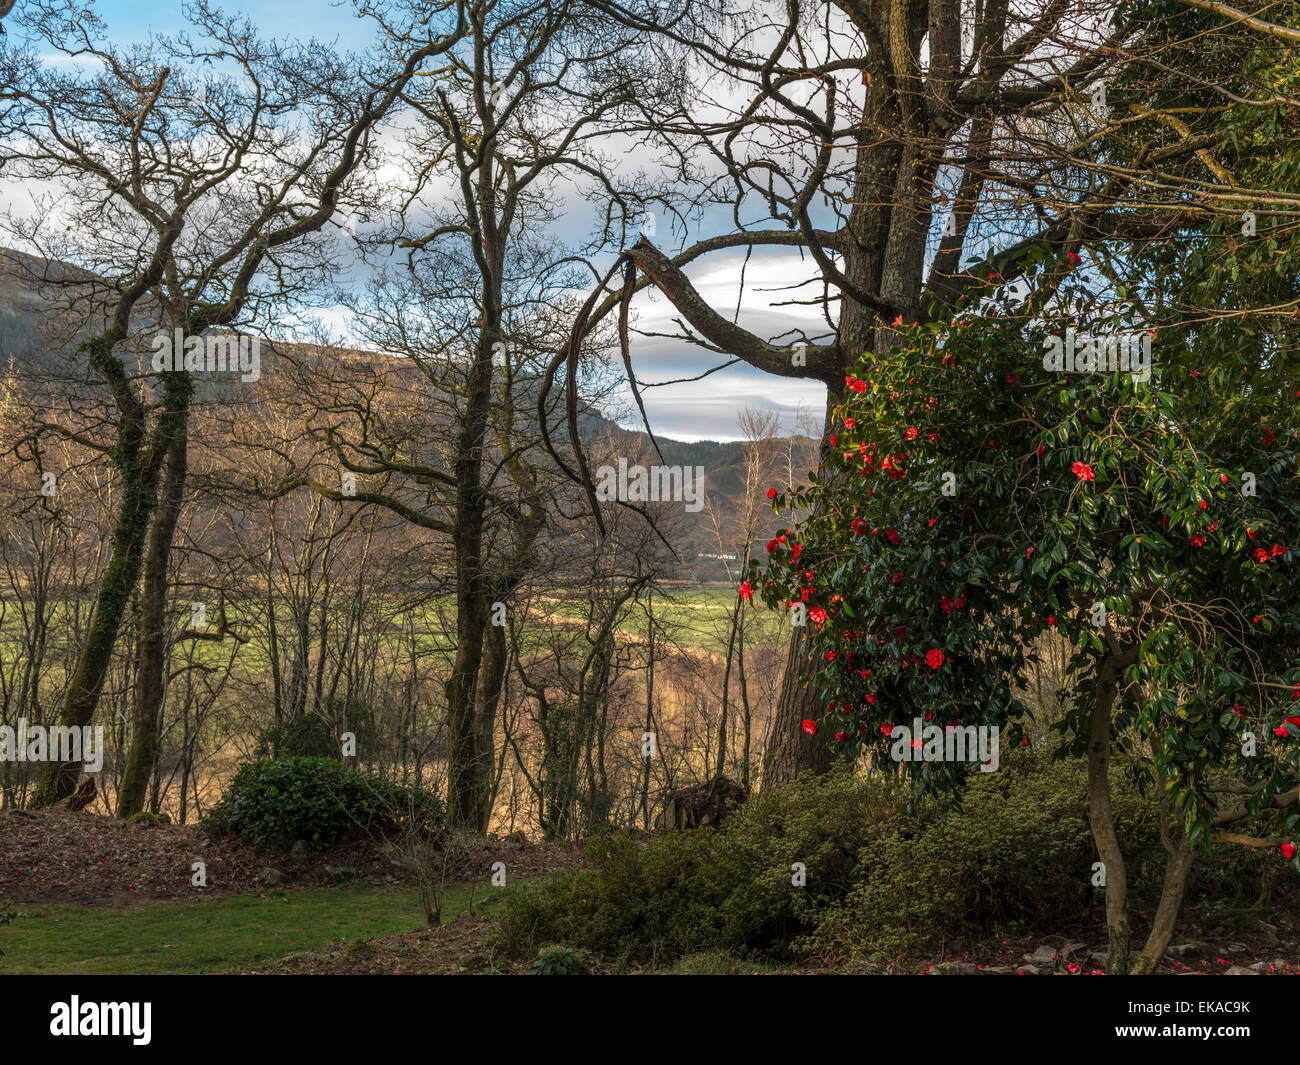 Pays de Galles Paysage, représentant une floraison rouge vif camellia bush, dans un environnement boisé, avec la forêt et la campagne vista. Banque D'Images